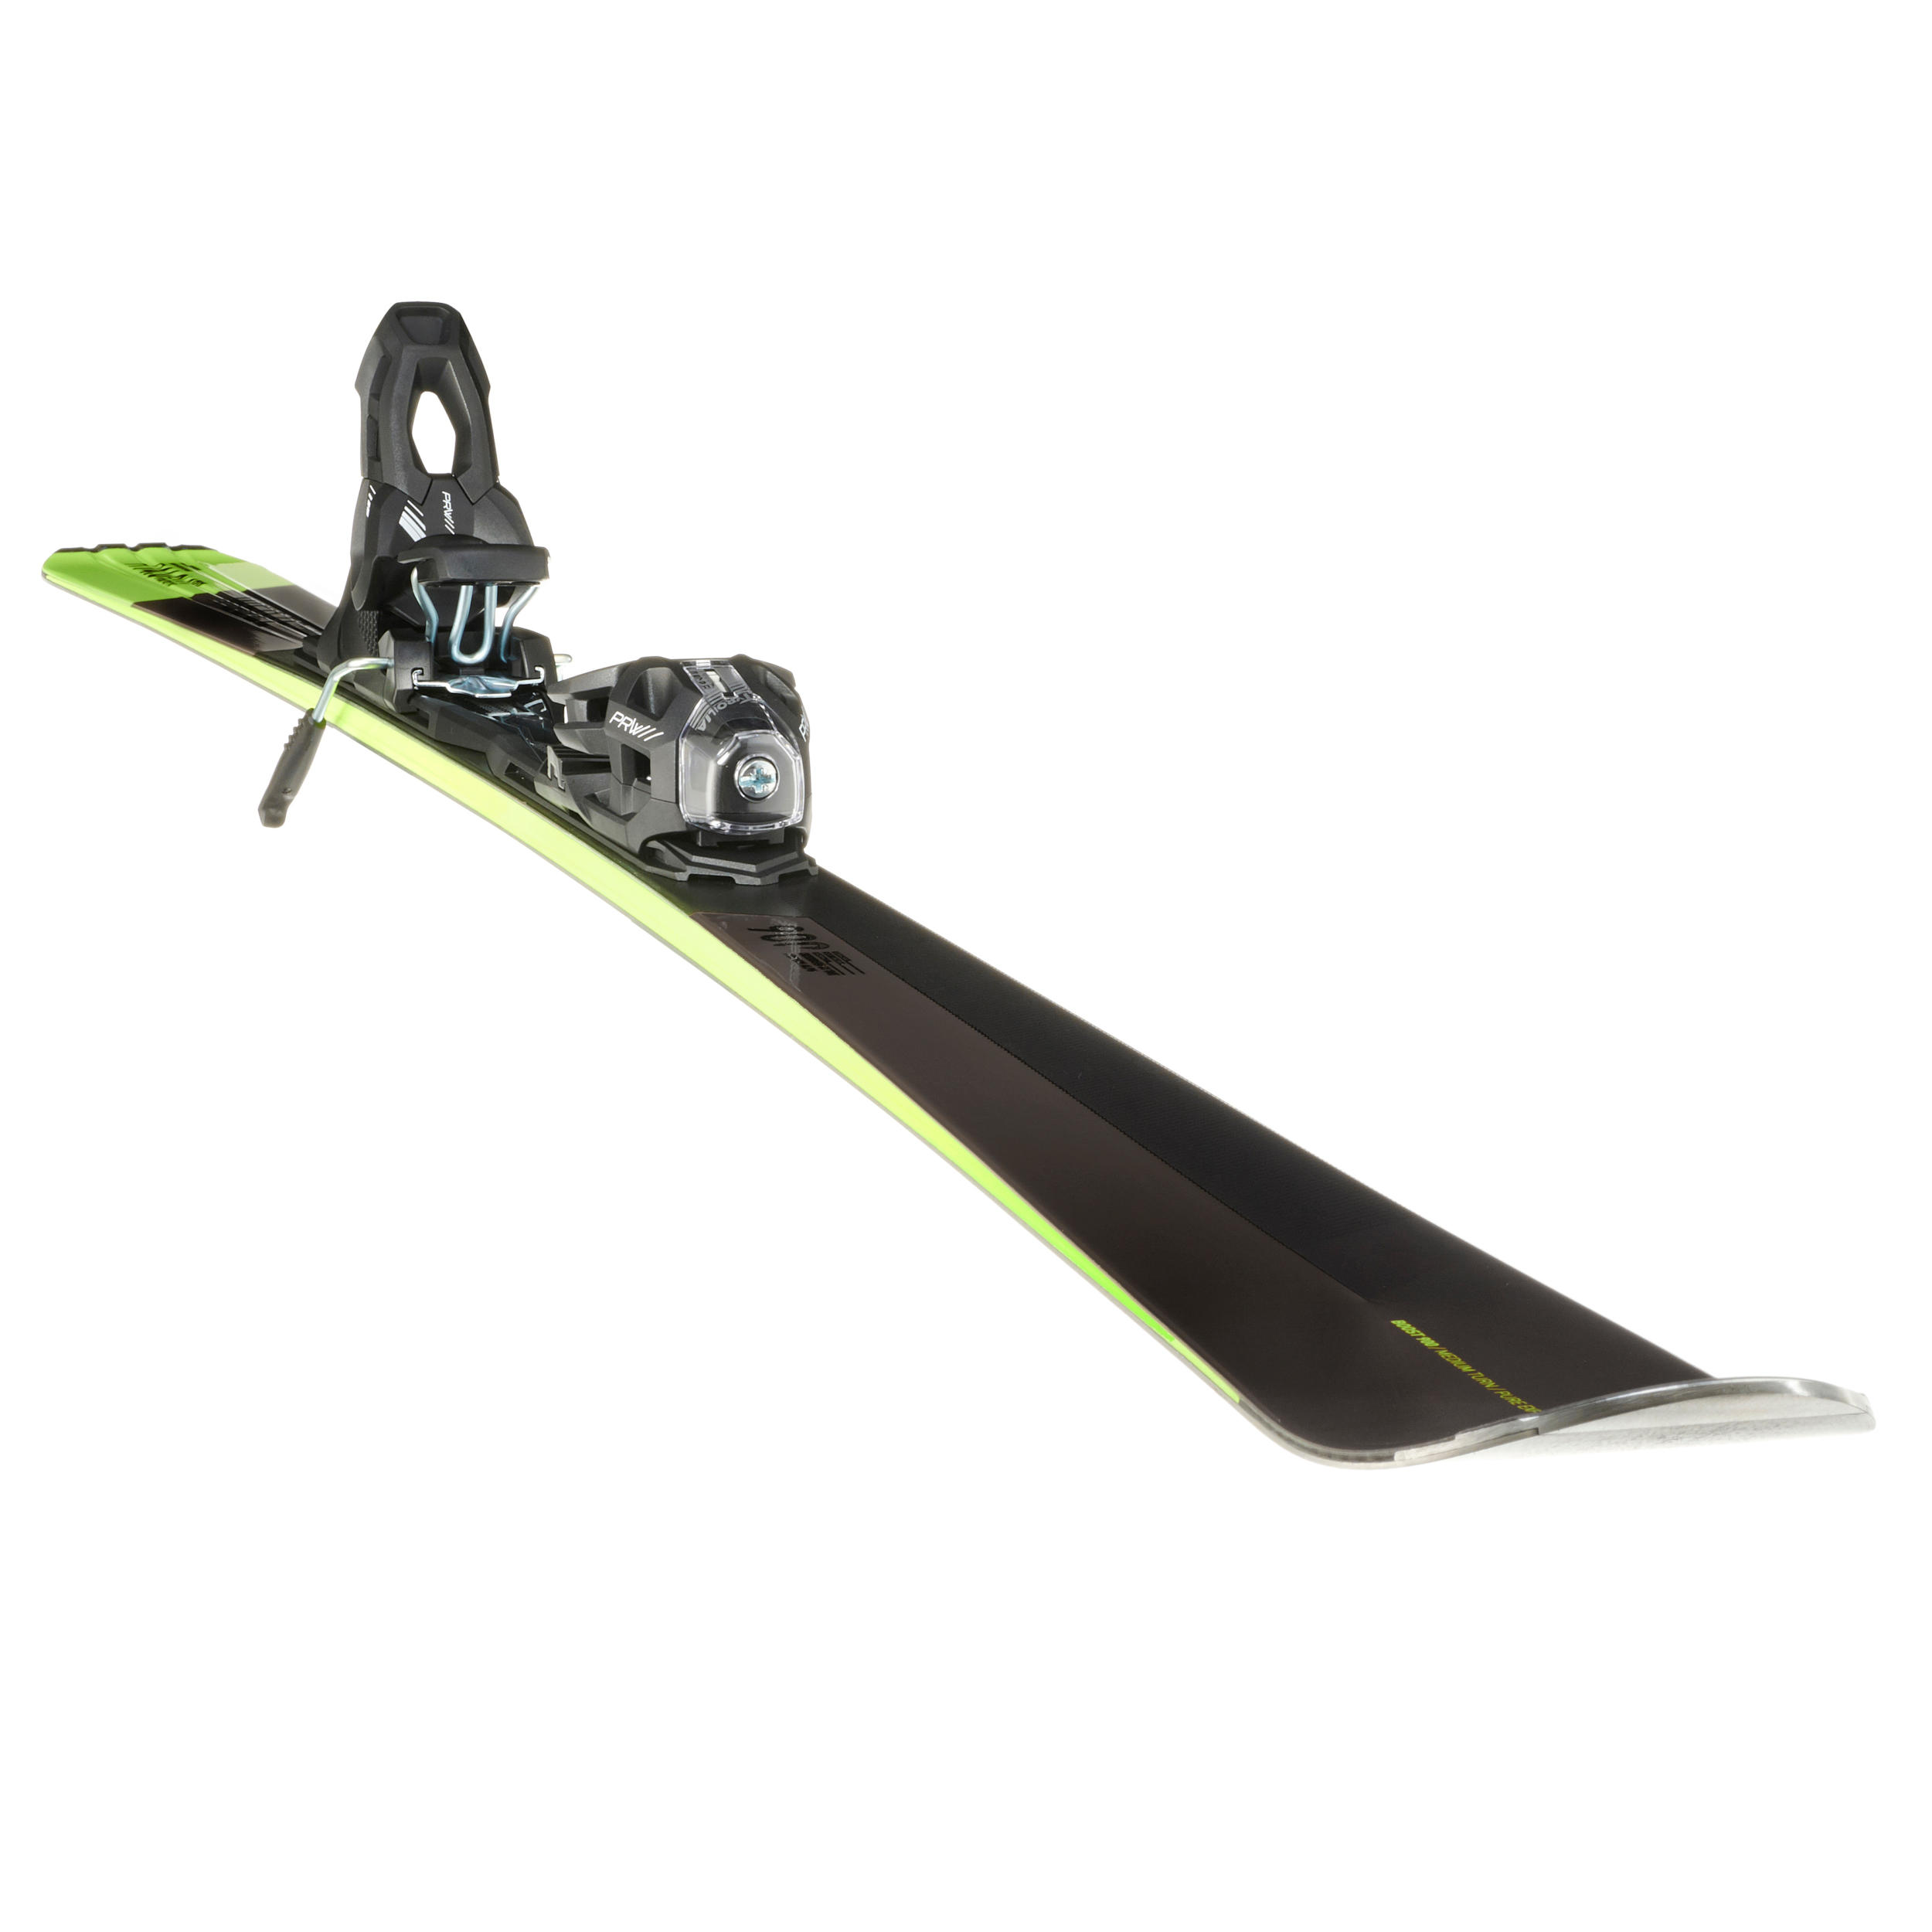 Men's Piste Ski with Binding Boost - Black 5/9